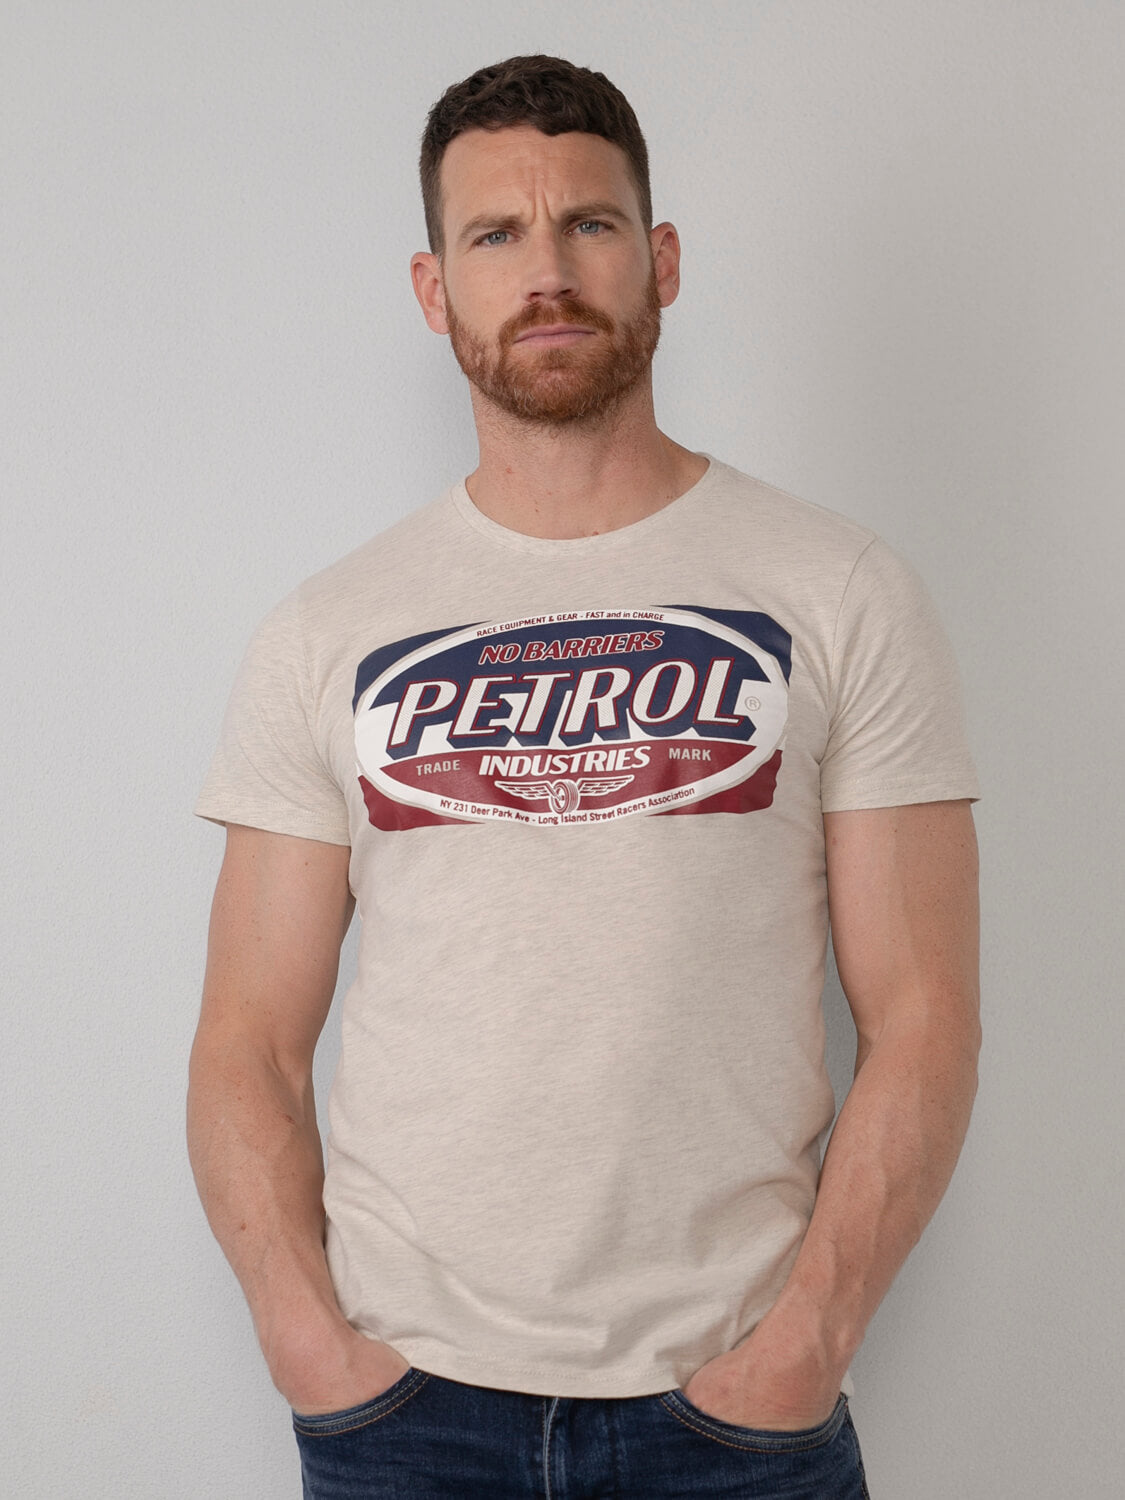 Artwork Petrol | Shirt webshop Official T Industries®